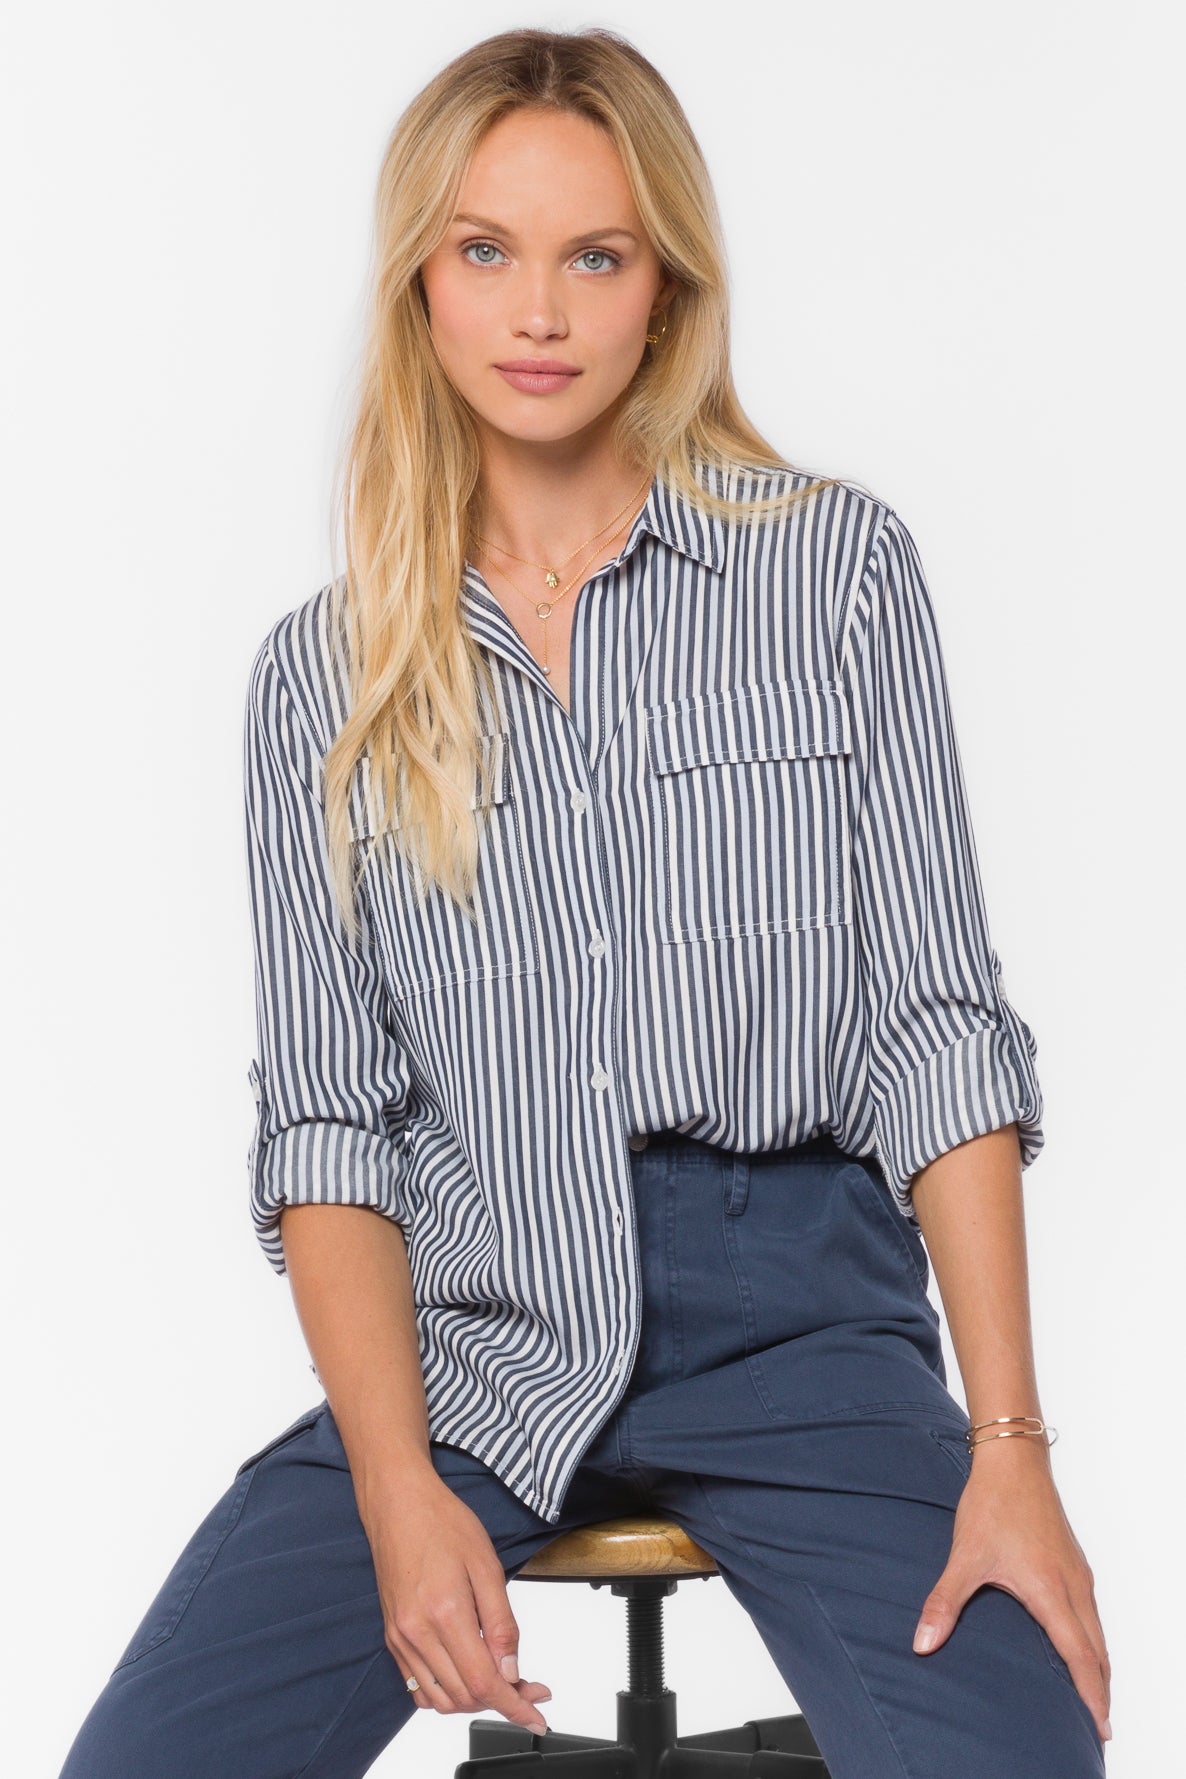 Talma French Navy Stripe Shirt - Tops - Velvet Heart Clothing